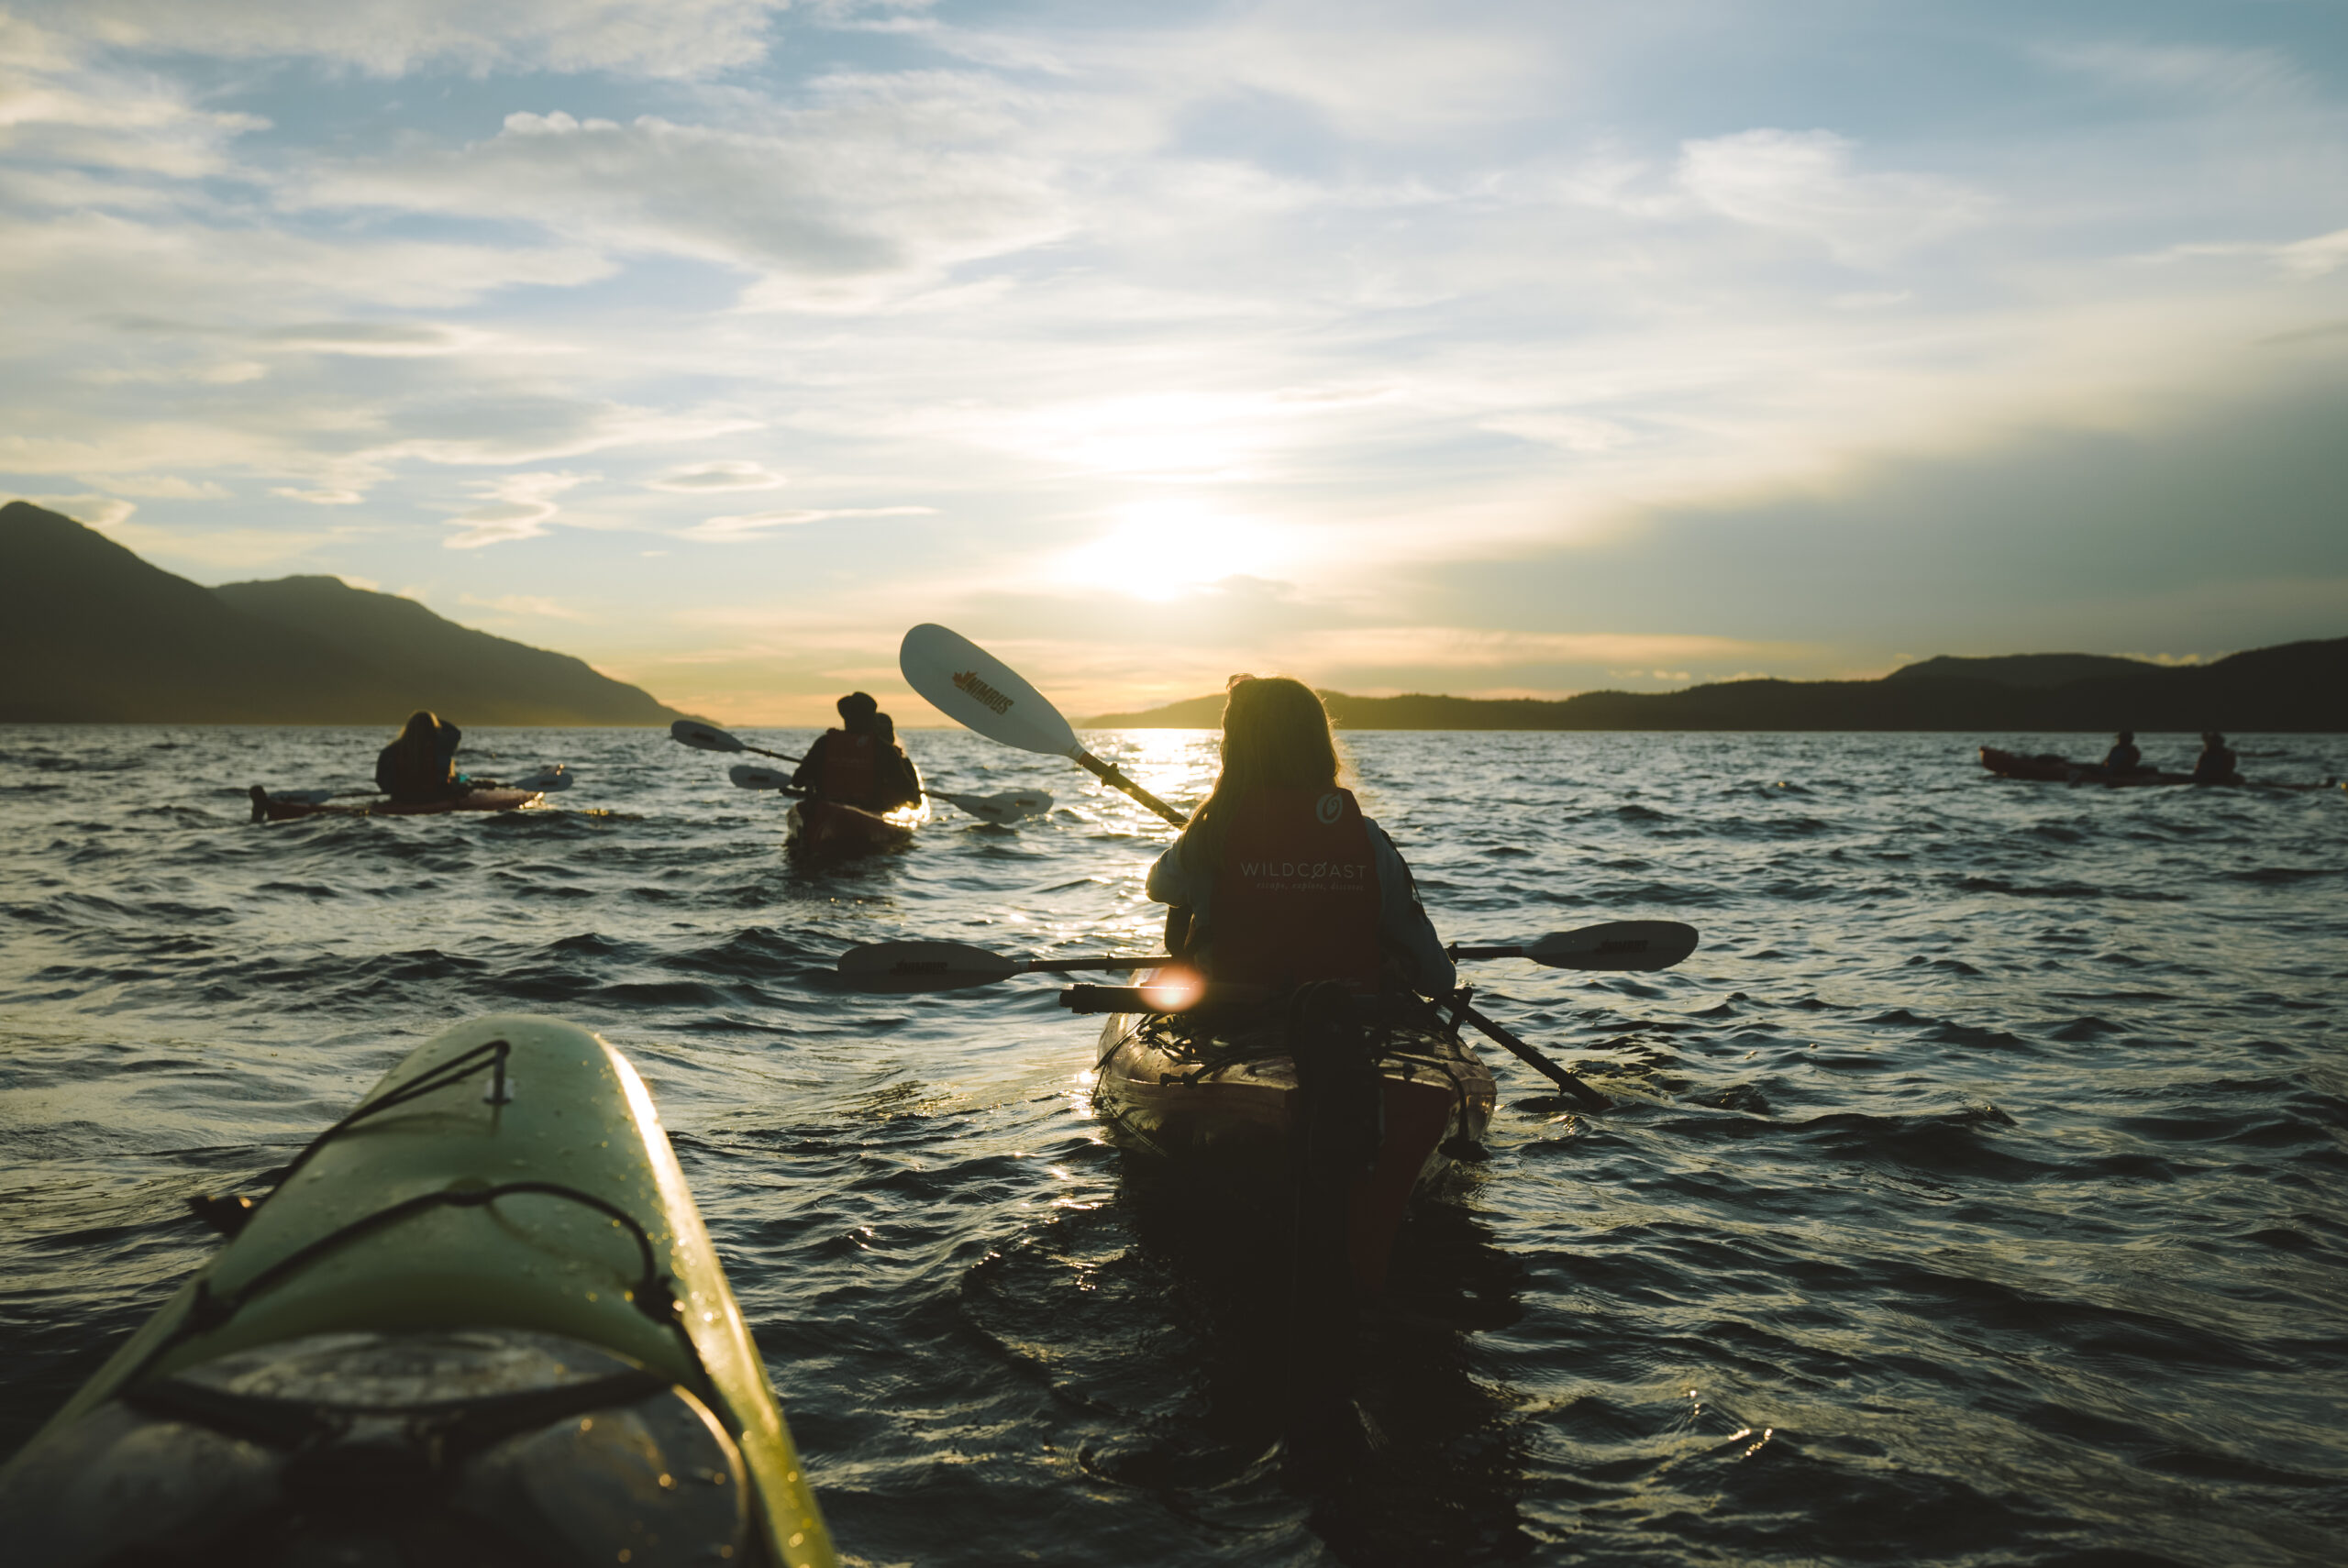 sea kayaking during sunset